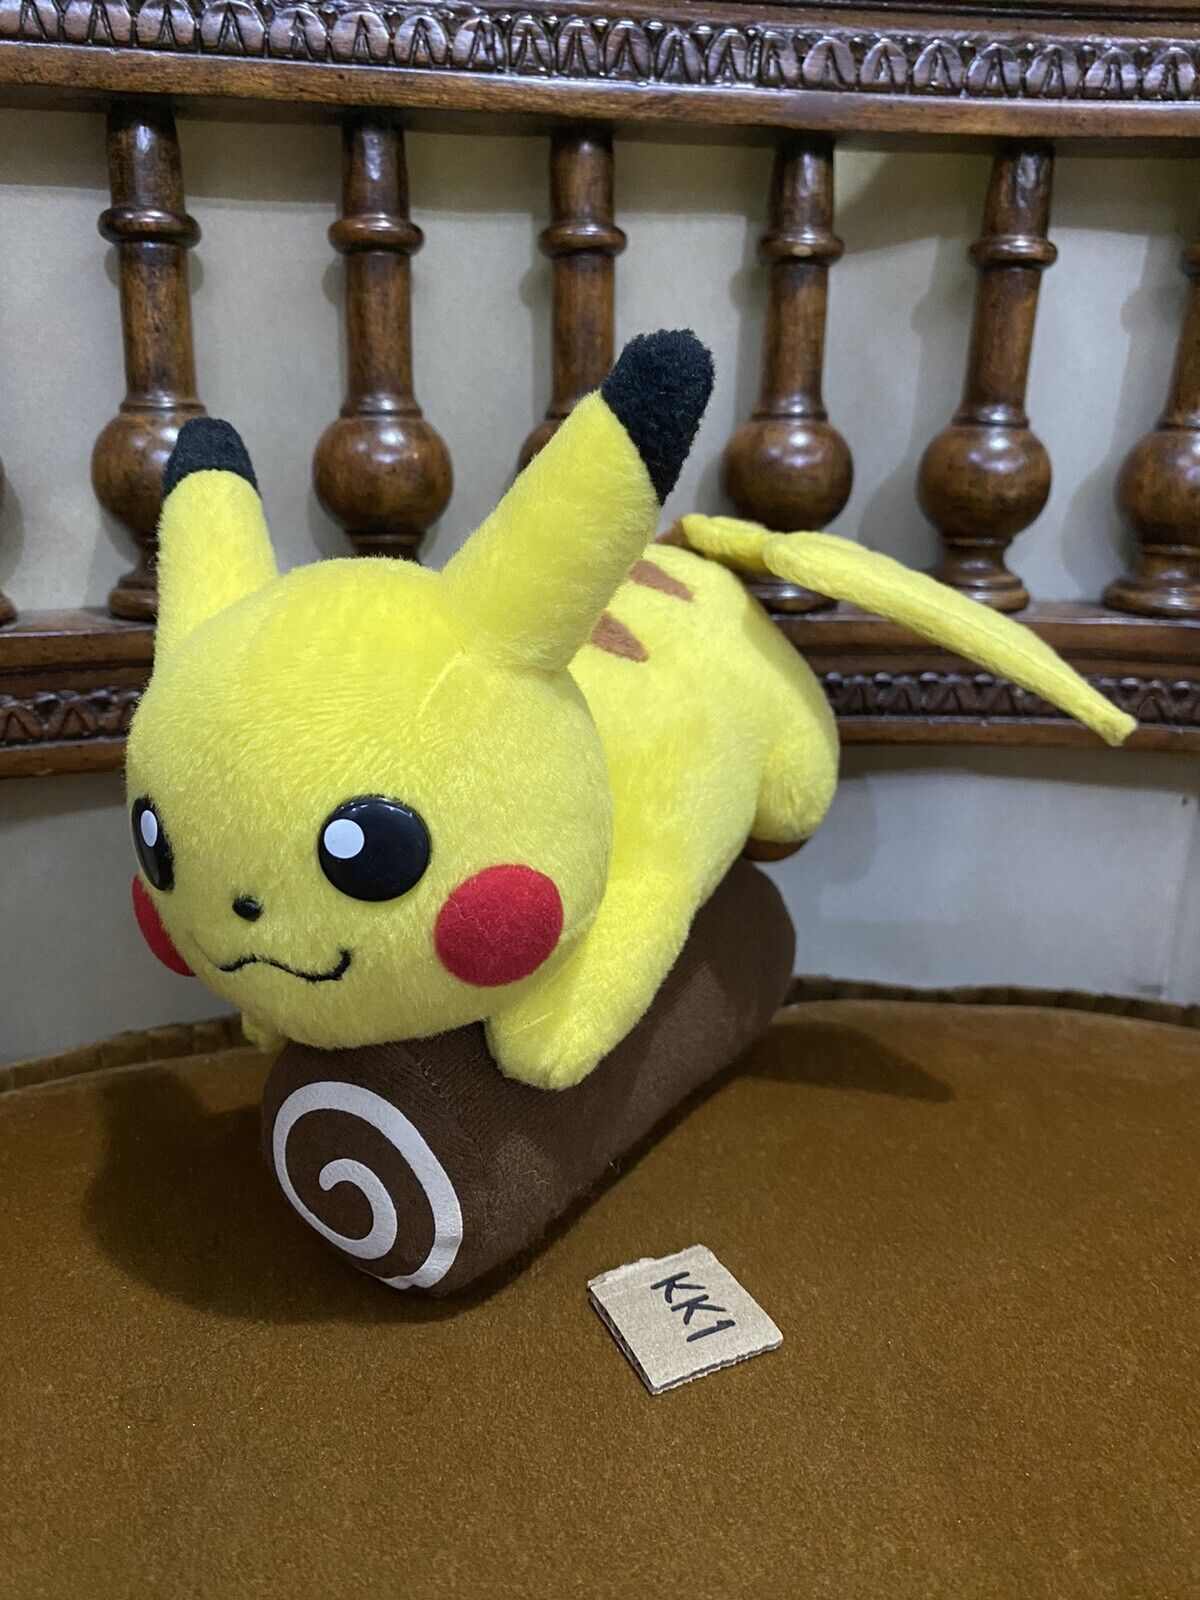 RARE Pikachu Pokemon Center 2004 Exchange Toy Plush pokedoll skitty